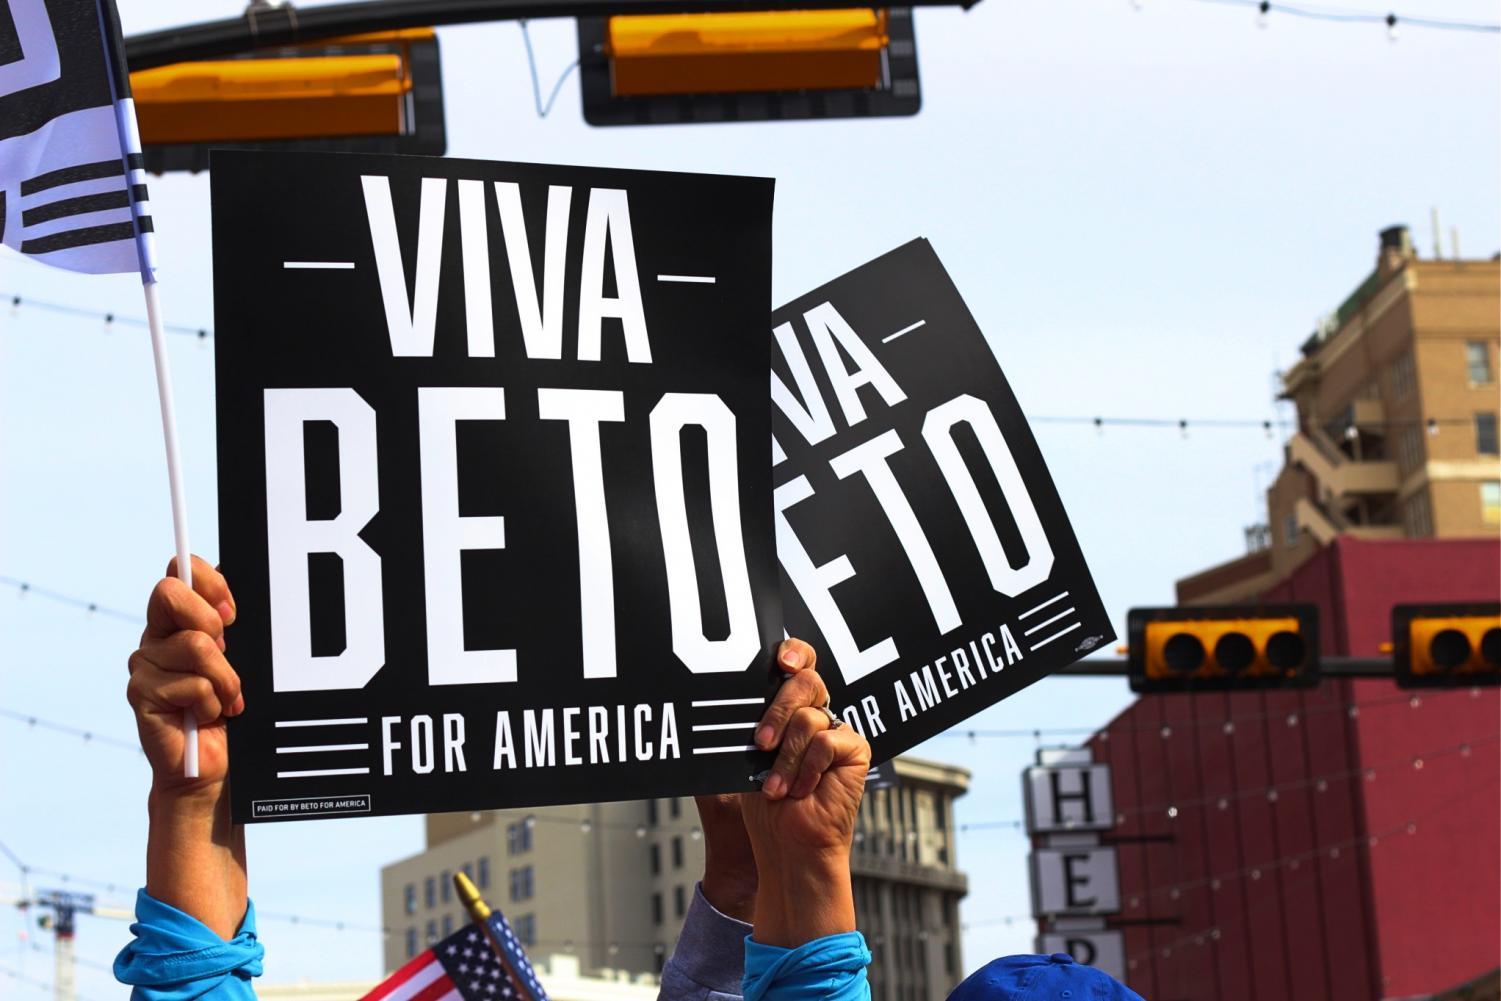 Beto+O%E2%80%99Rourke+kicks+off+presidential+campaign+in+Downtown+El+Paso